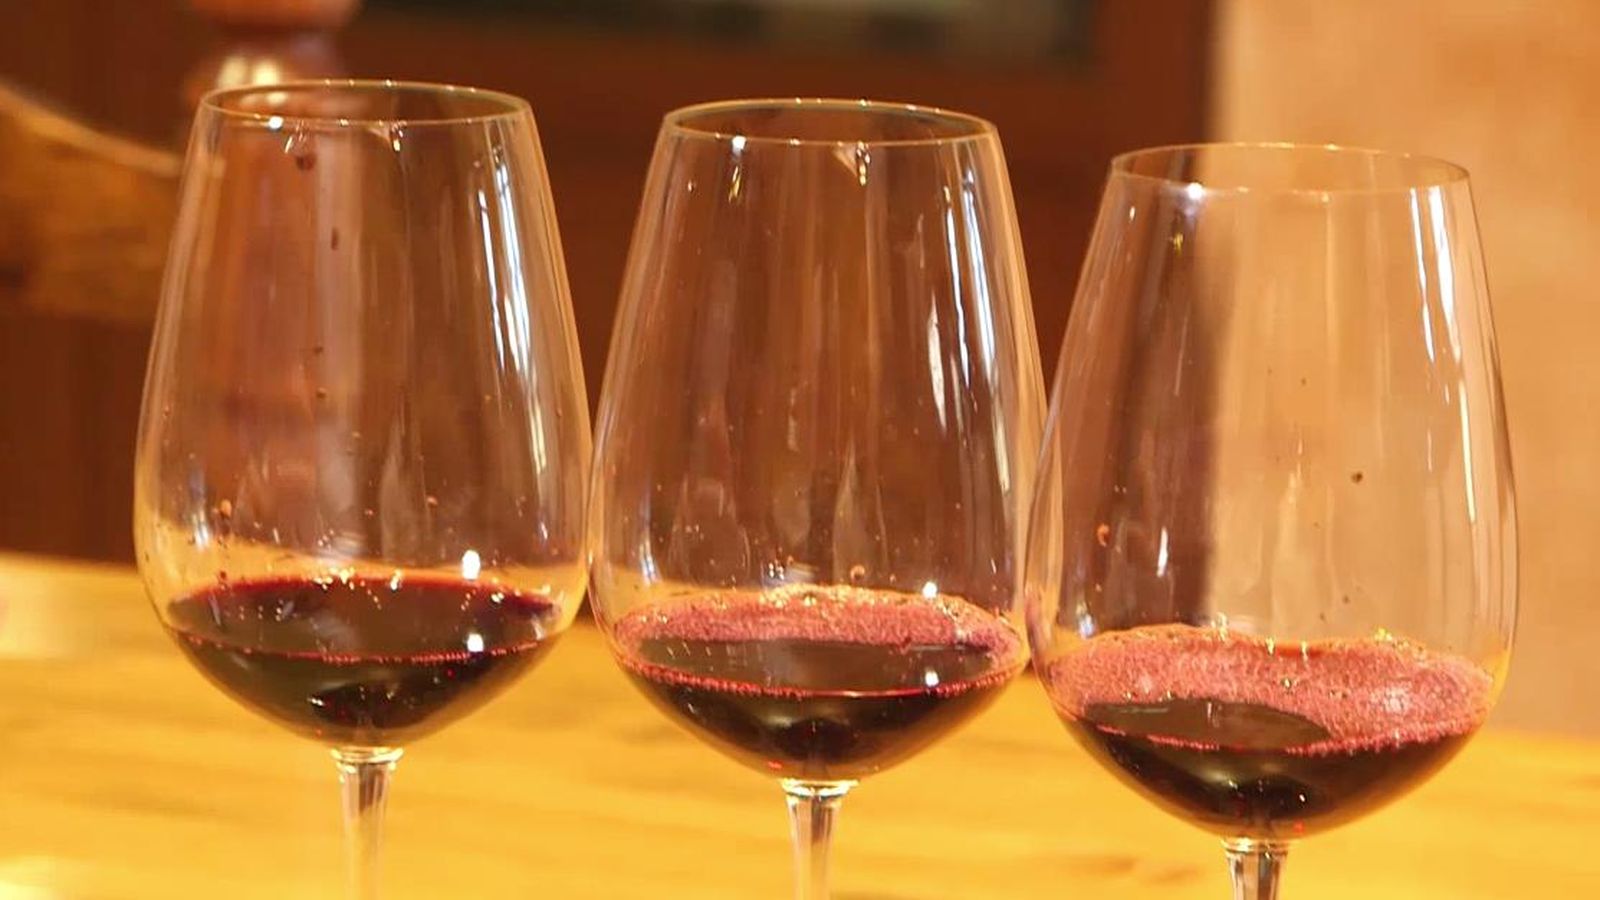 Foto: Los antioxidantes presentes en el vino ayudan a mejorar la salud